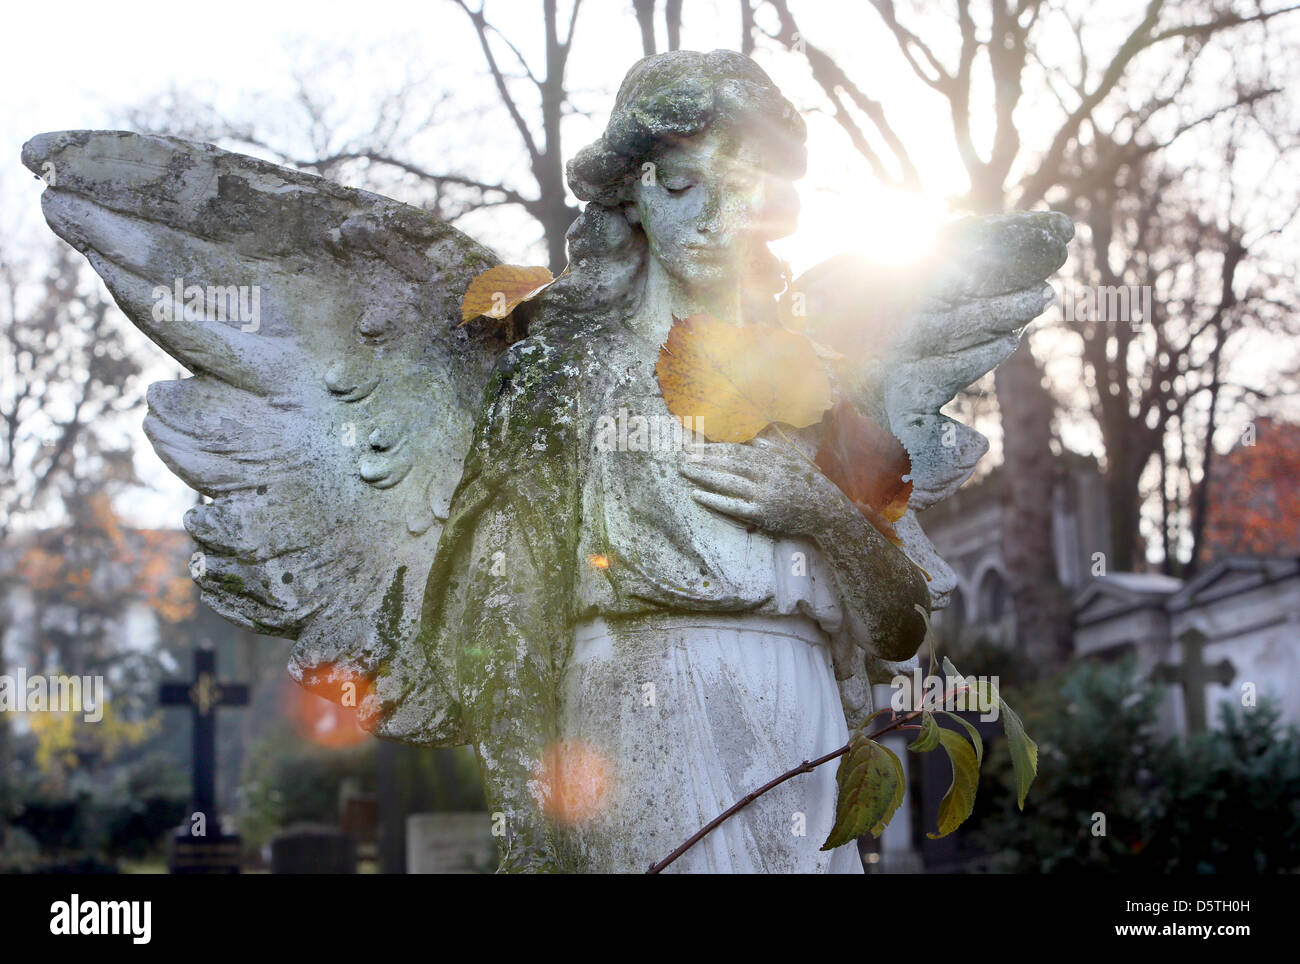 Eine Engelsstatue ist St. Matthäus Friedhof in Berlin, Deutschland, 23. November 2012 abgebildet. Sonntag der Toten ("Totensonntag") ist ein deutscher religiöser Feiertag, der am letzten Sonntag vor dem Advent als allgemeine Feier in Gedenkstätte des verstorbenen begangen wird. Foto: Stephanie Pilick Stockfoto